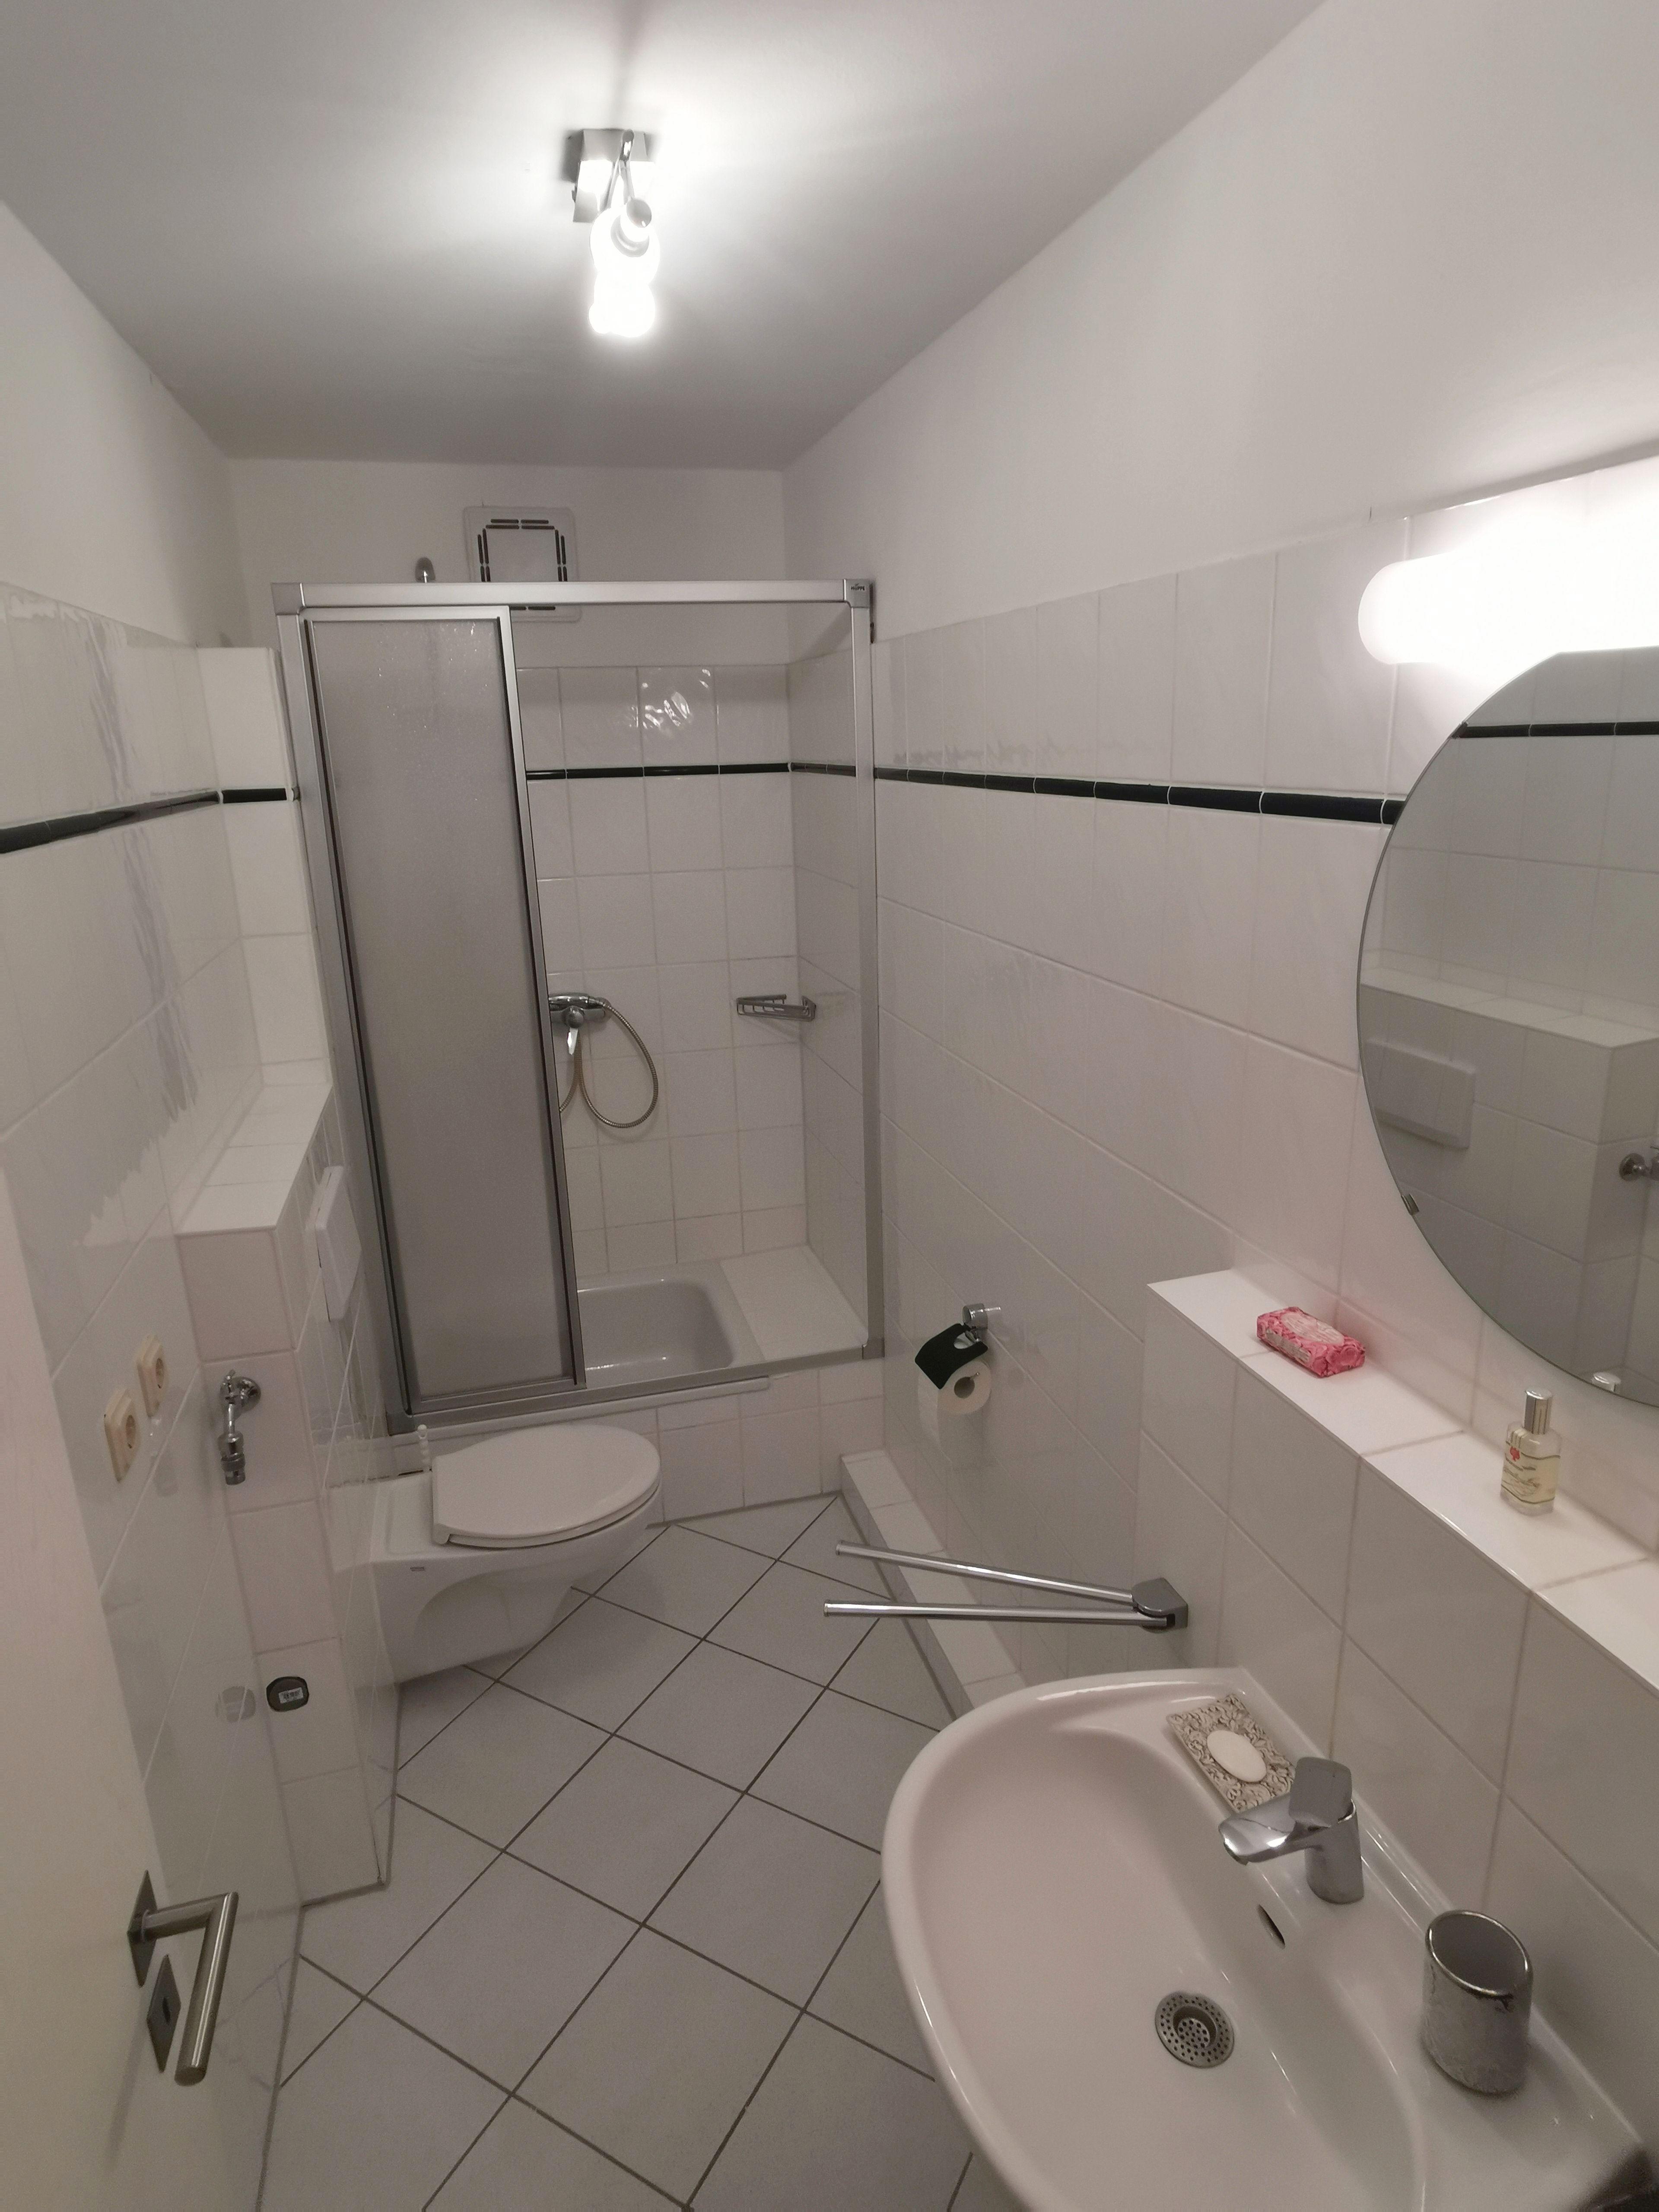 Gäste-WC mit Dusche.jpg